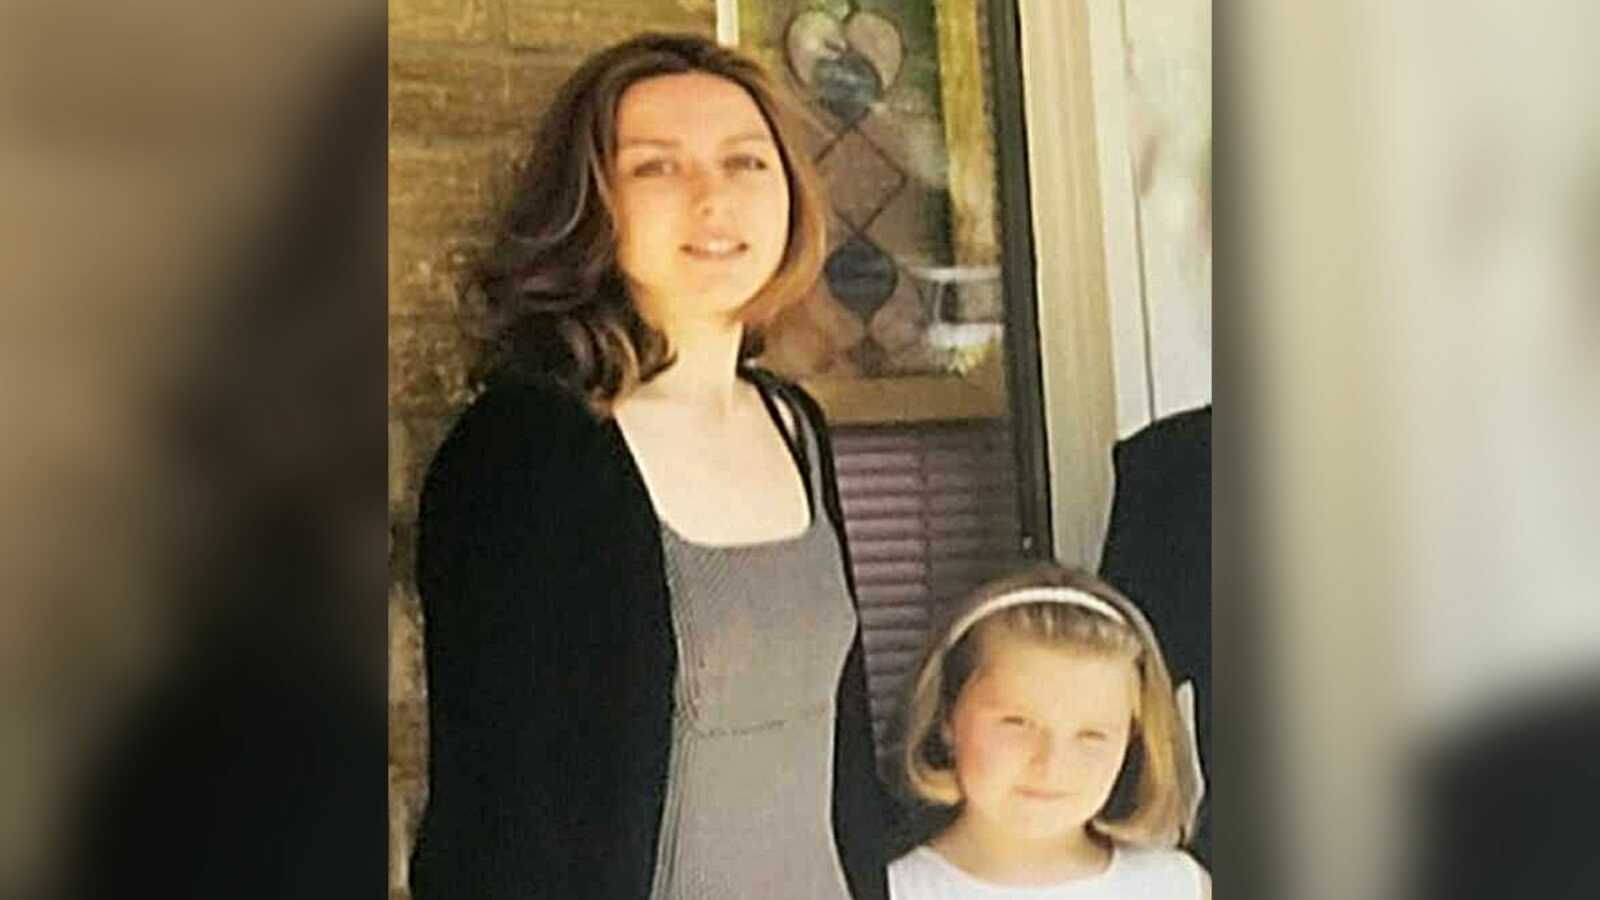 hero aunt stands next to child abuse survivor